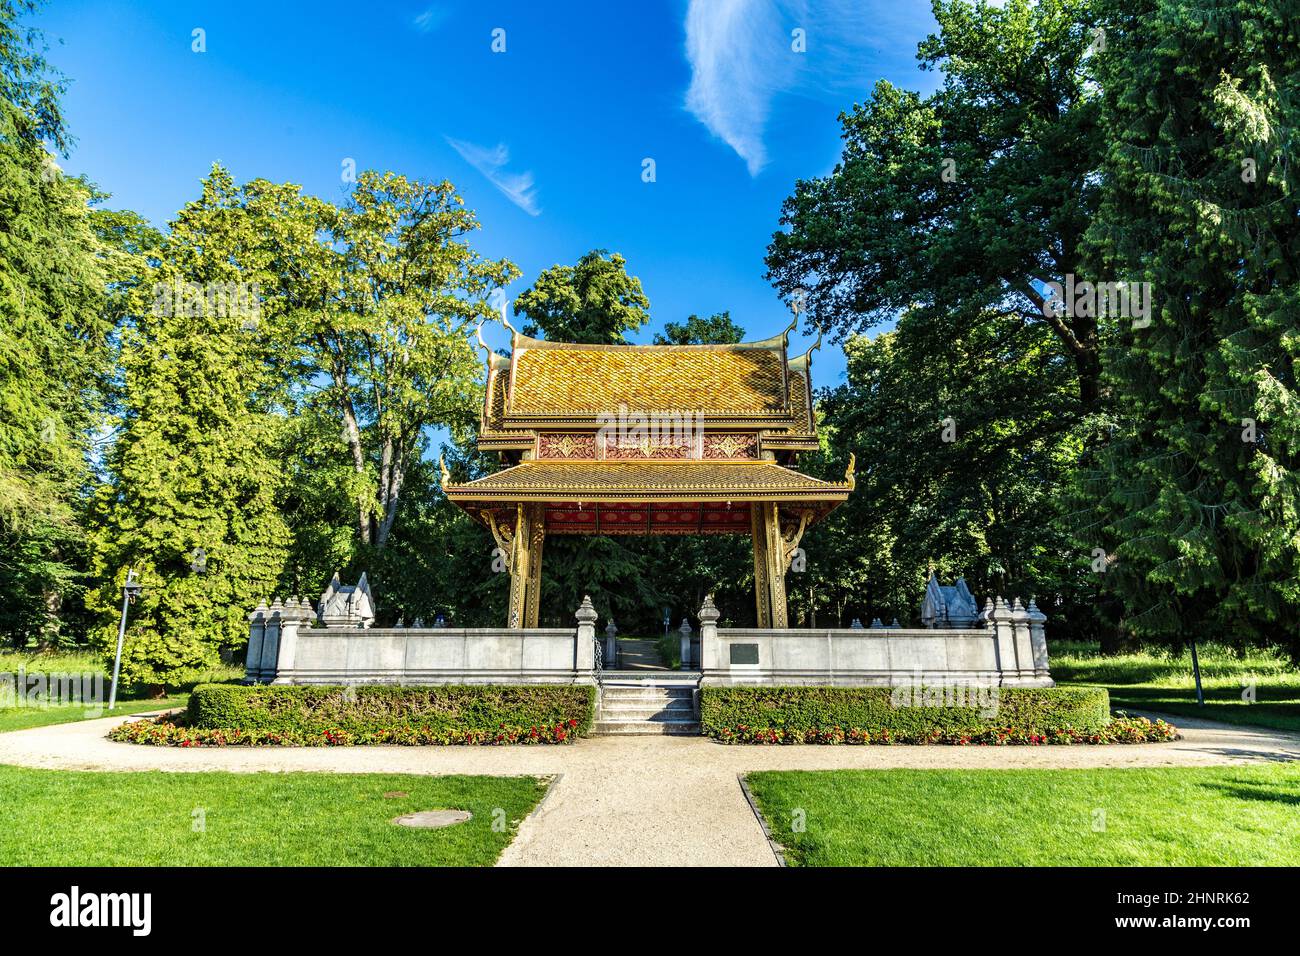 El templo tailandés salo en el parque de Bad Homburg Foto de stock